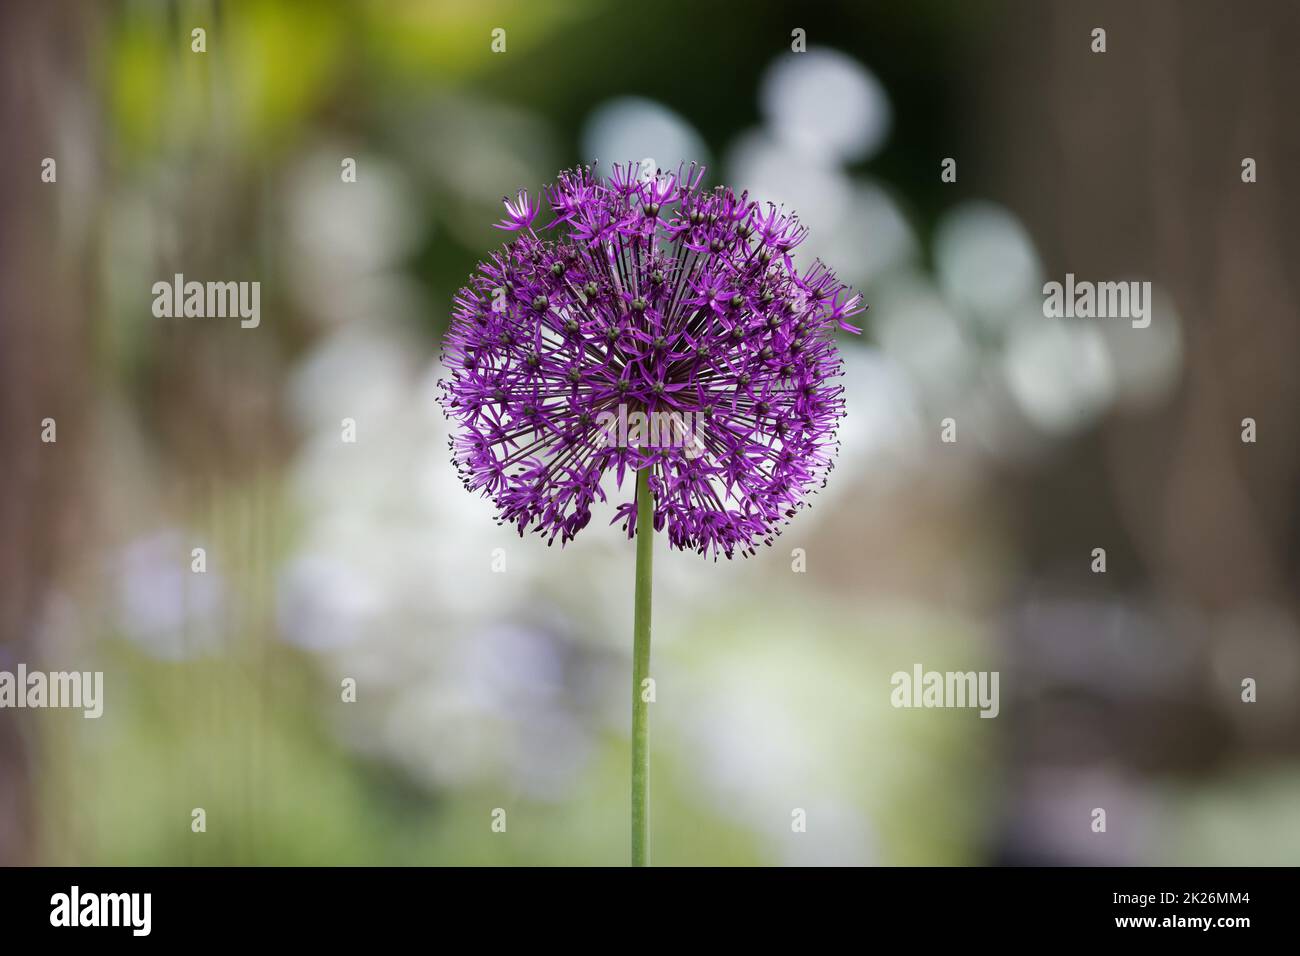 Allium nigrum, inflorescence d'un ail noir pourpre Banque D'Images